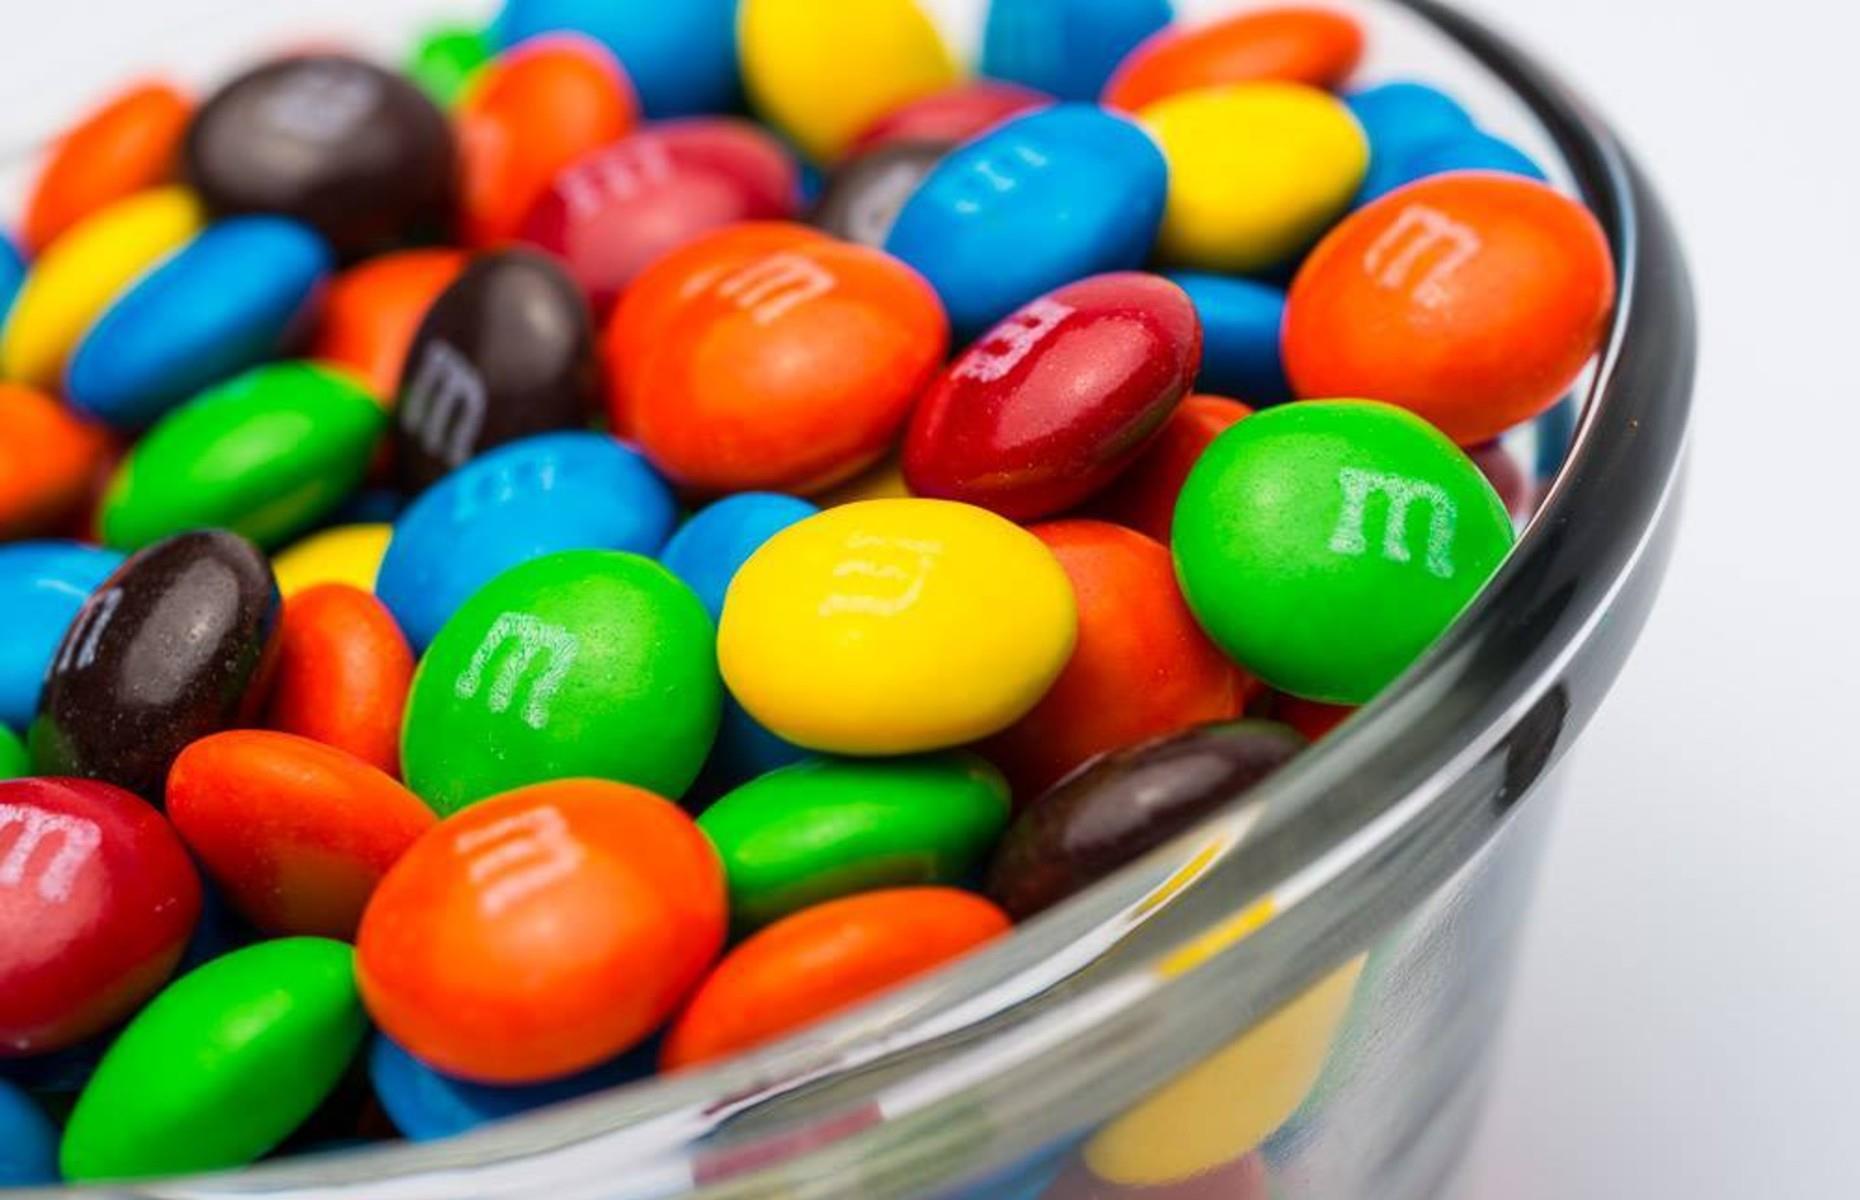 M&M'S ask fans to vote for new peanut M&M's flavor